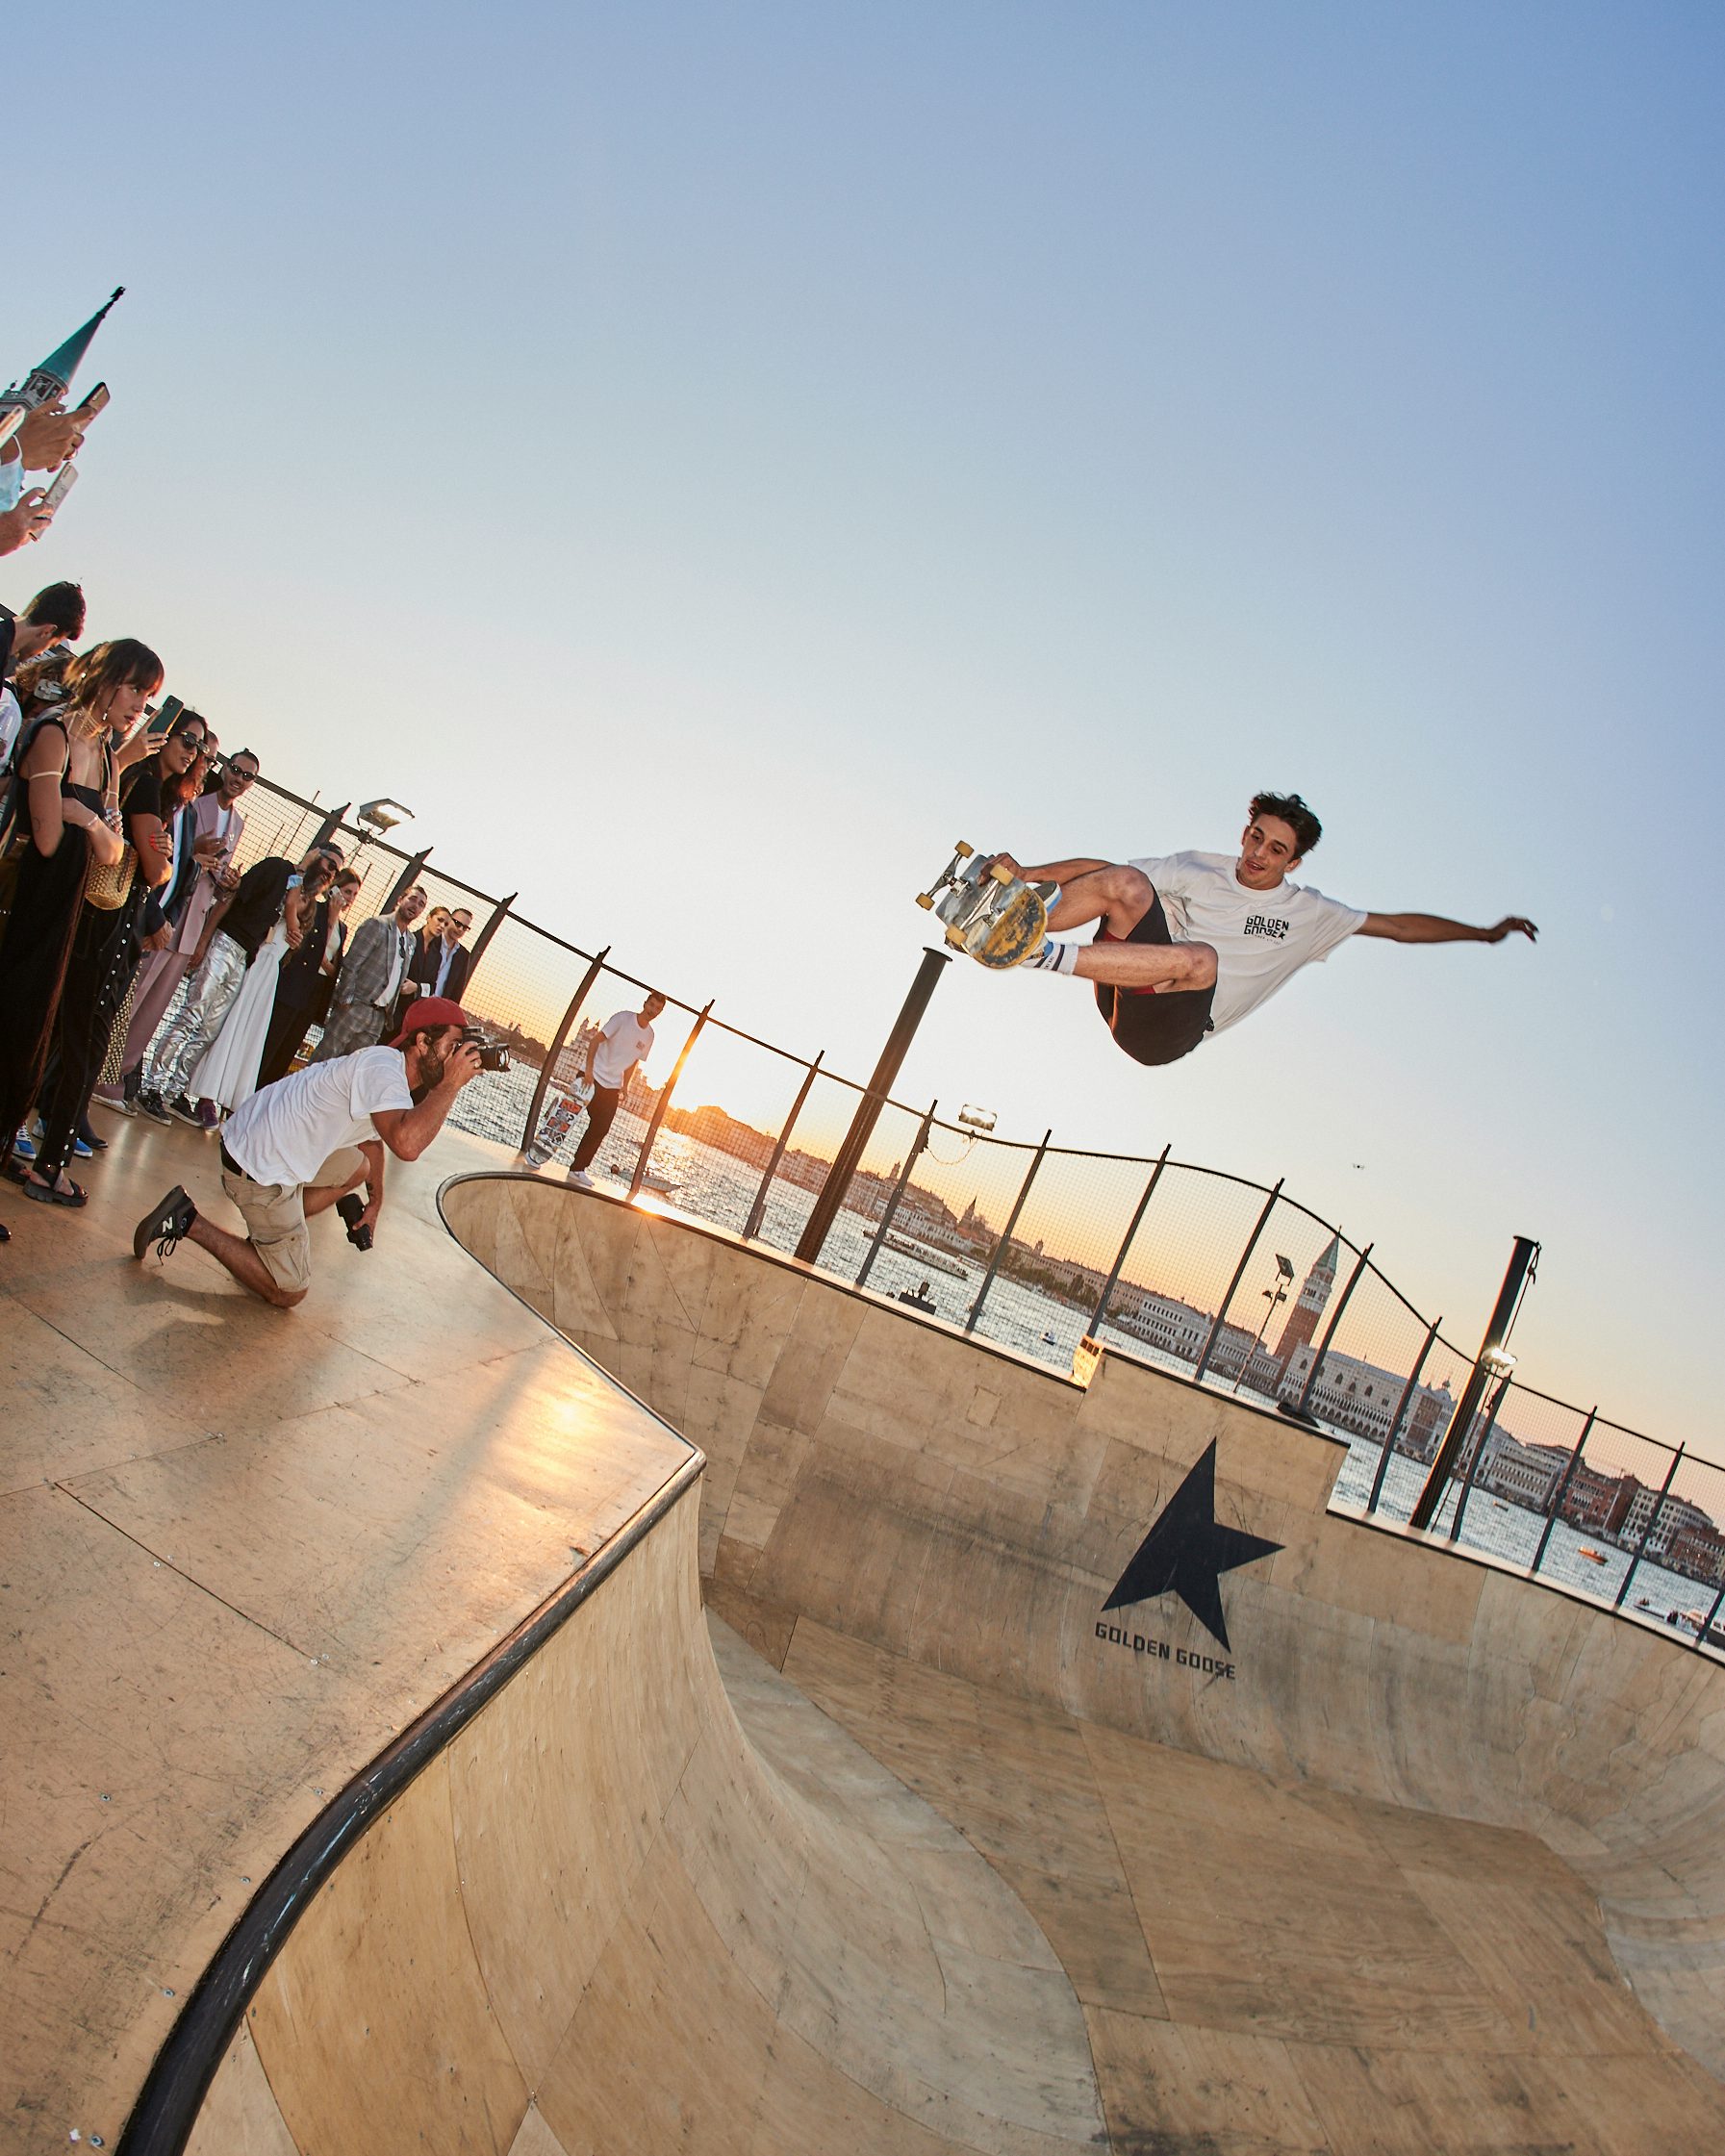 Cory Juneau skateboards at Golden Goose's floating bowl in Venice. Golden Goose.